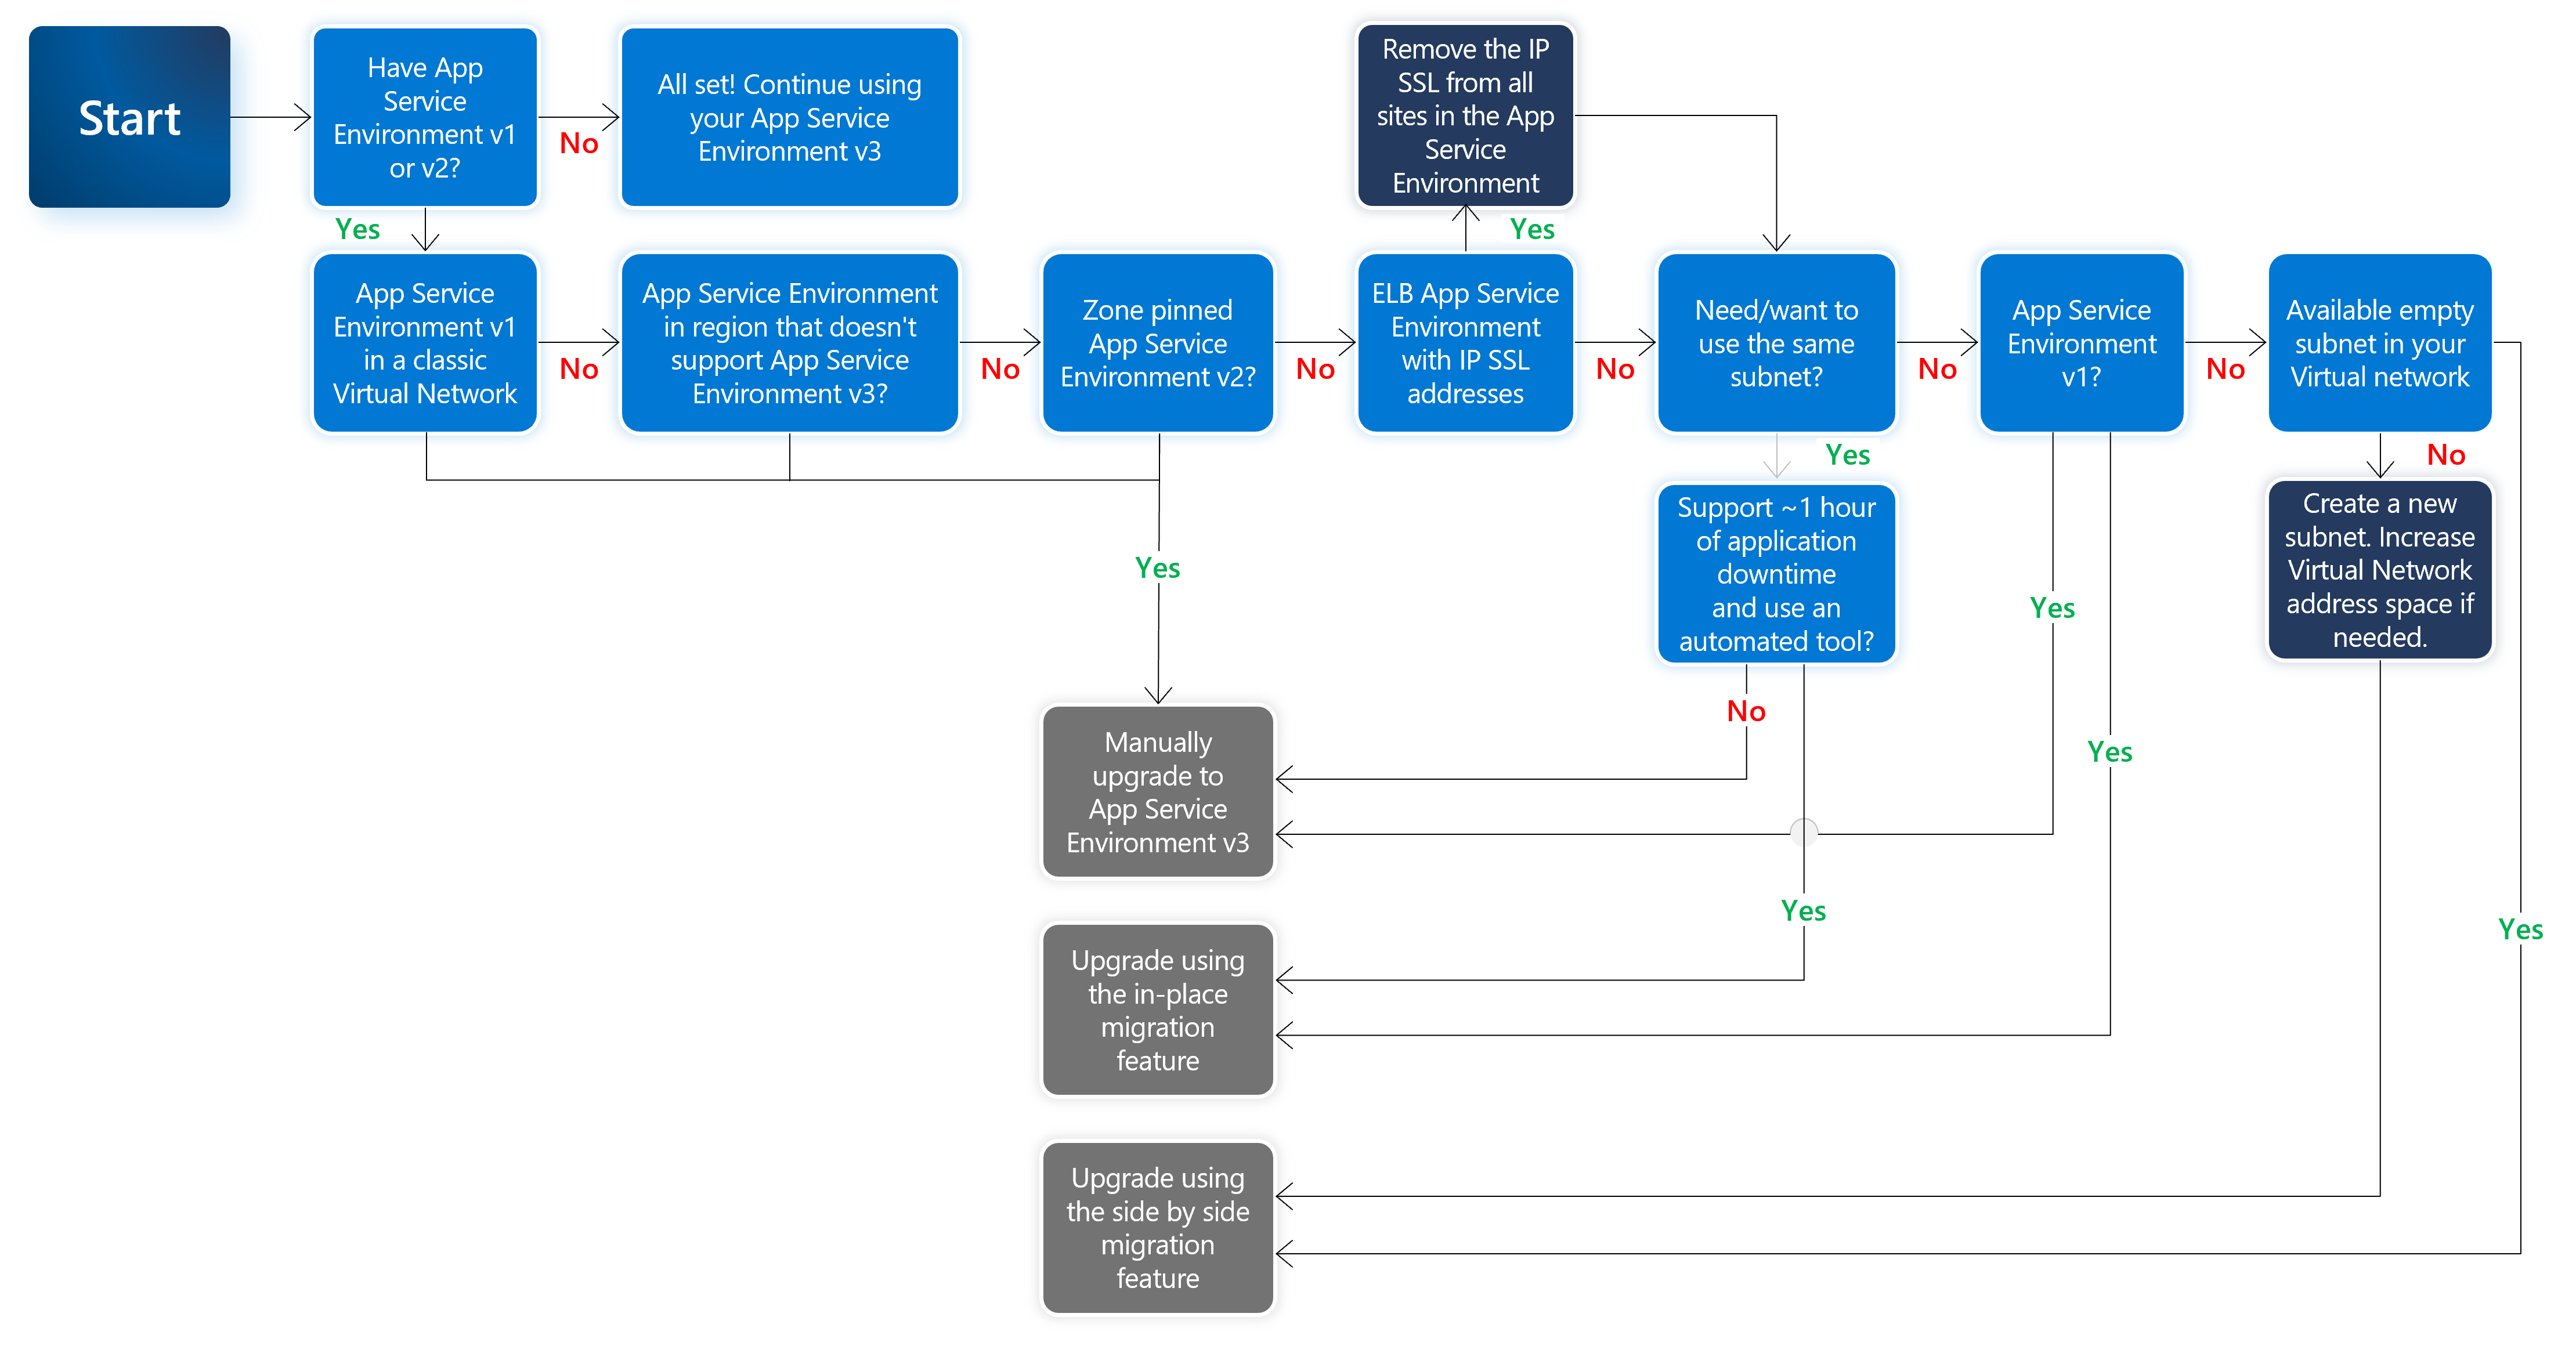 Captura de tela da árvore de decisão para ajudar a decidir qual opção de atualização do Ambiente do Serviço de Aplicativo usar.